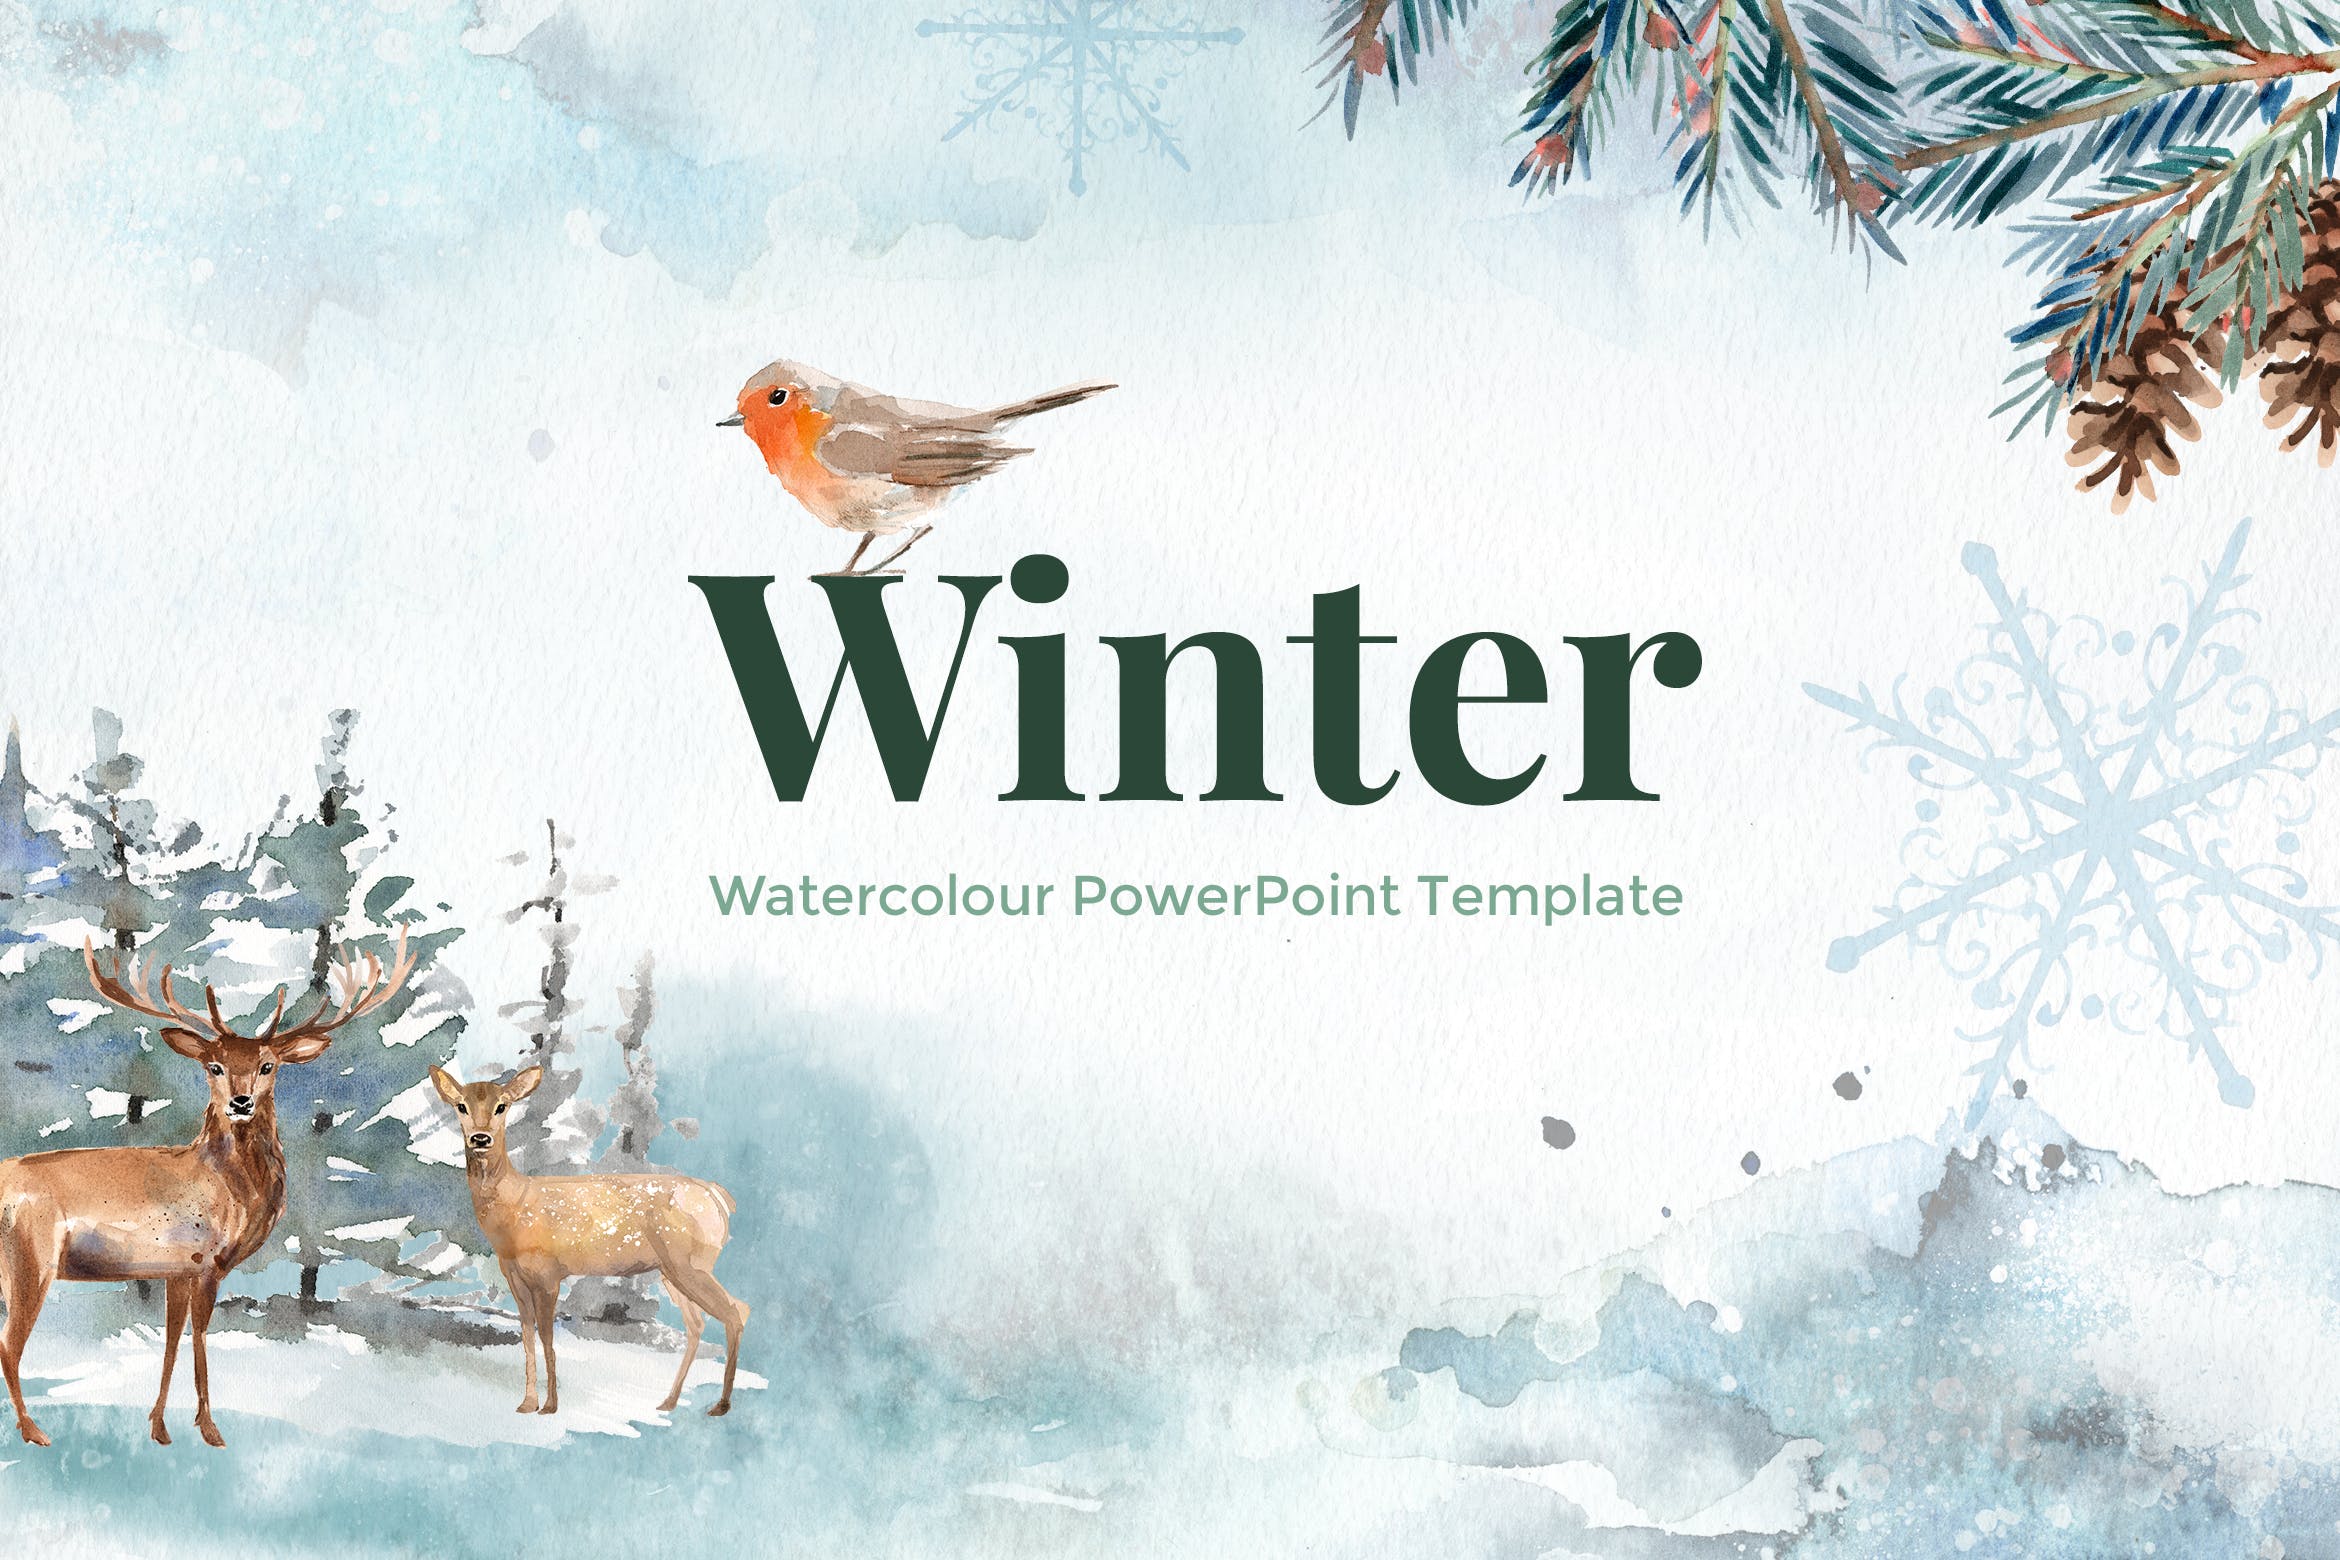 冬季水彩设计风格16图库精选PPT模板下载 Winter – Watercolour PowerPoint Template插图